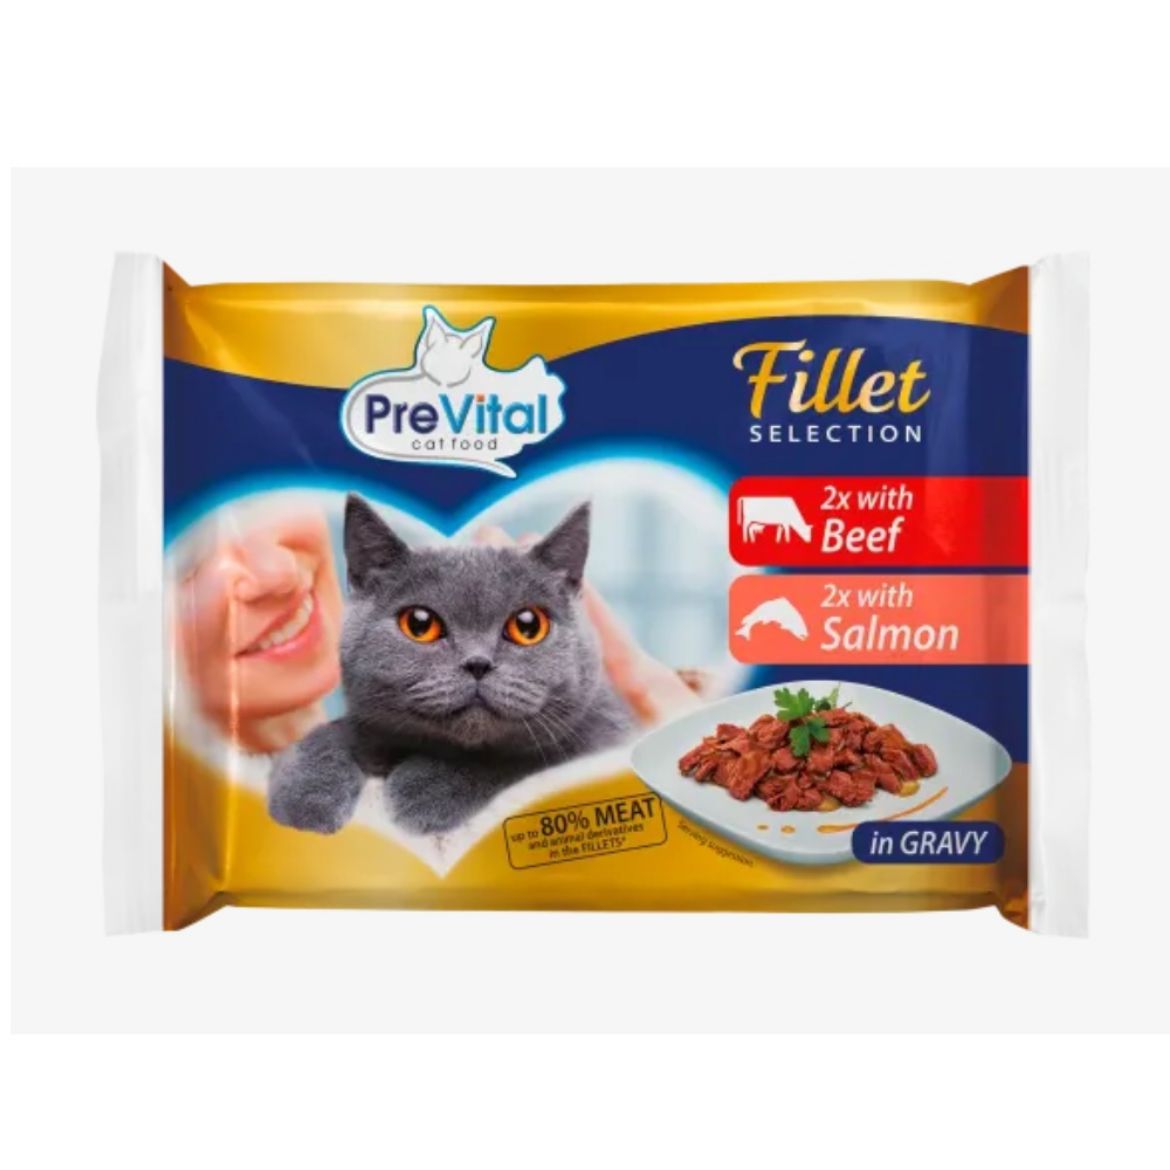 Obrázek z PreVital Fillet kočka hovězí a losos, kapsa 85 g (4 pack)  